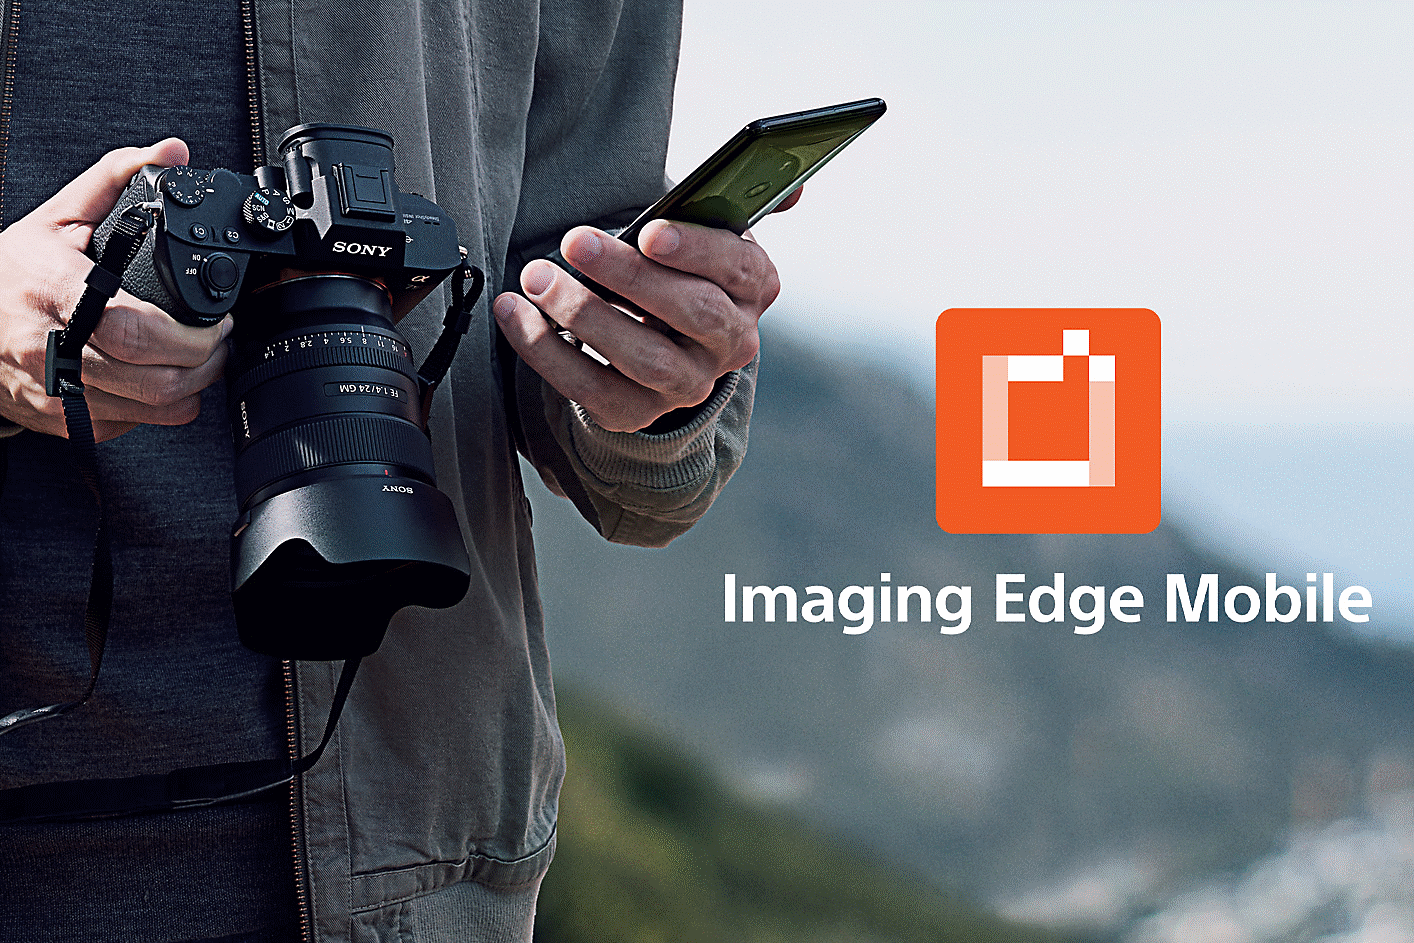 Un hombre sujetando la α1 y un smartphone, y el logotipo de Imaging Edge Mobile